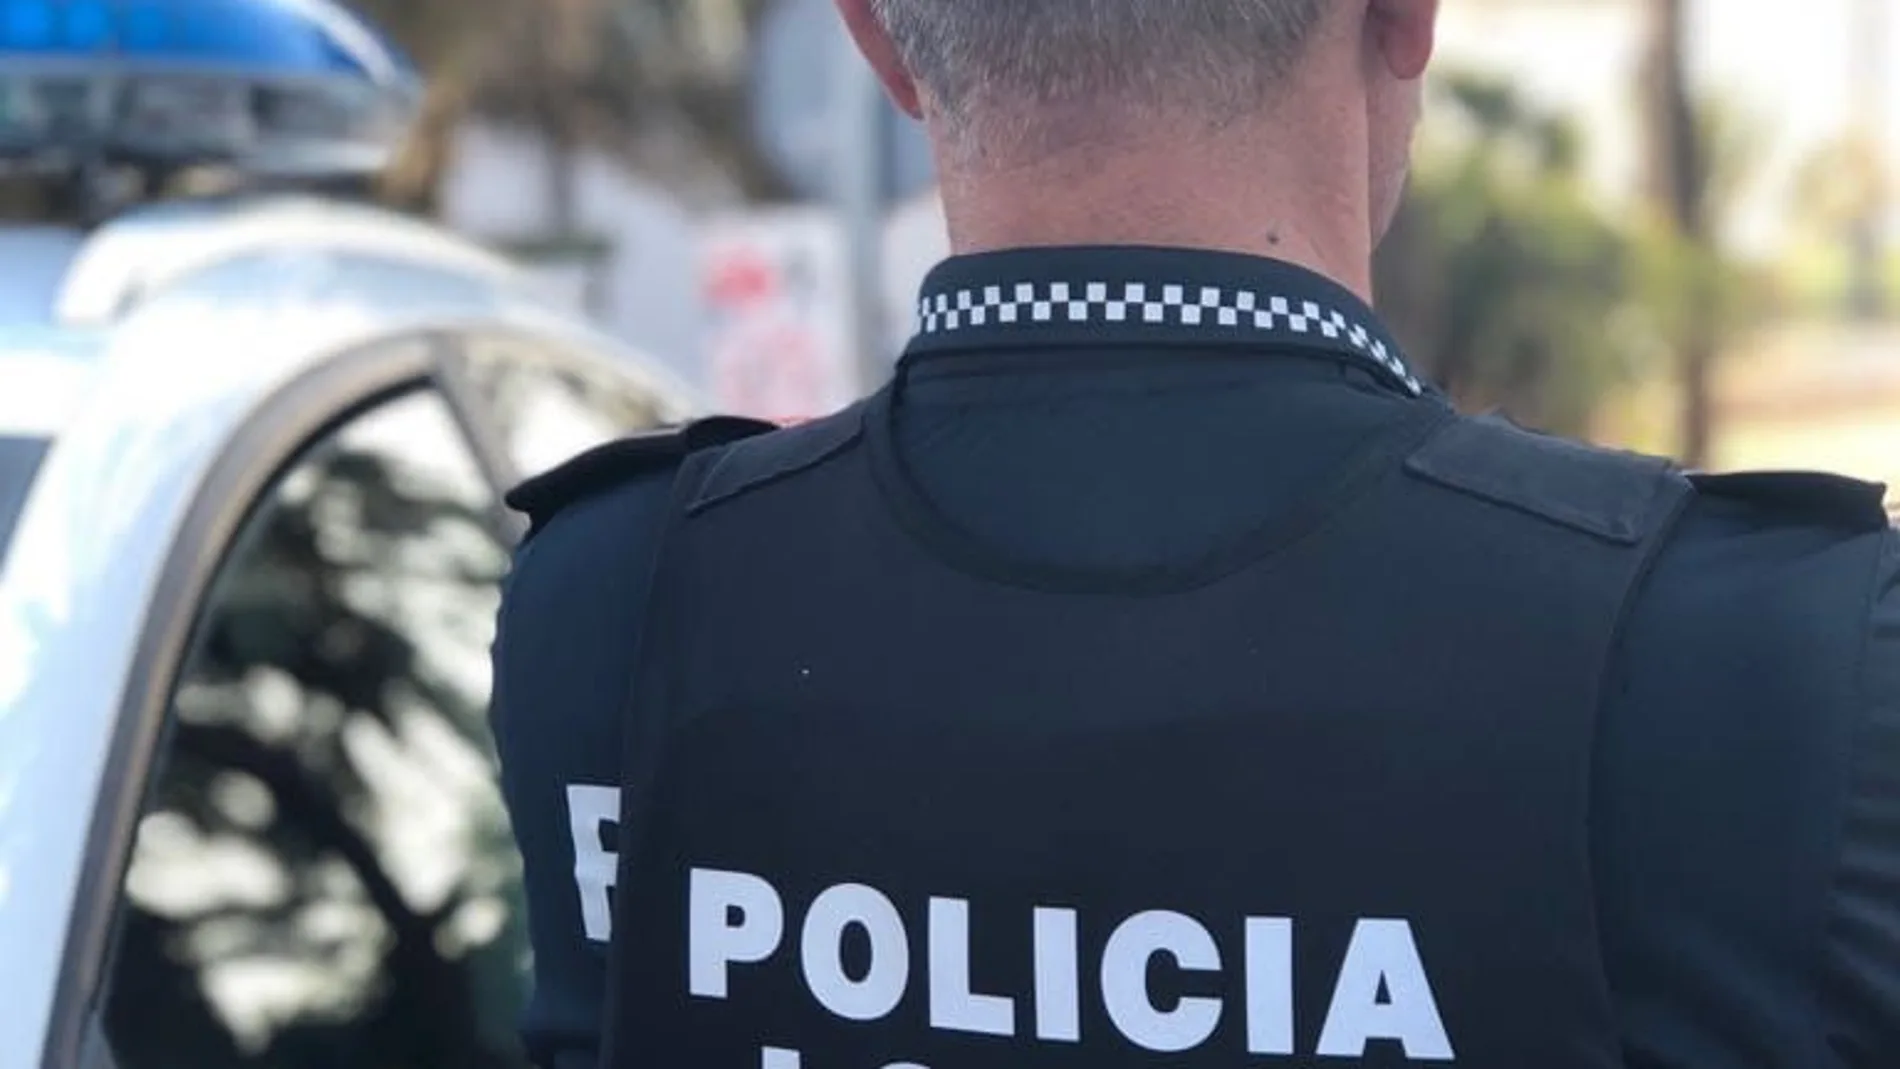 Imagen de archivo de un agente de la Policía Local de Alboraya